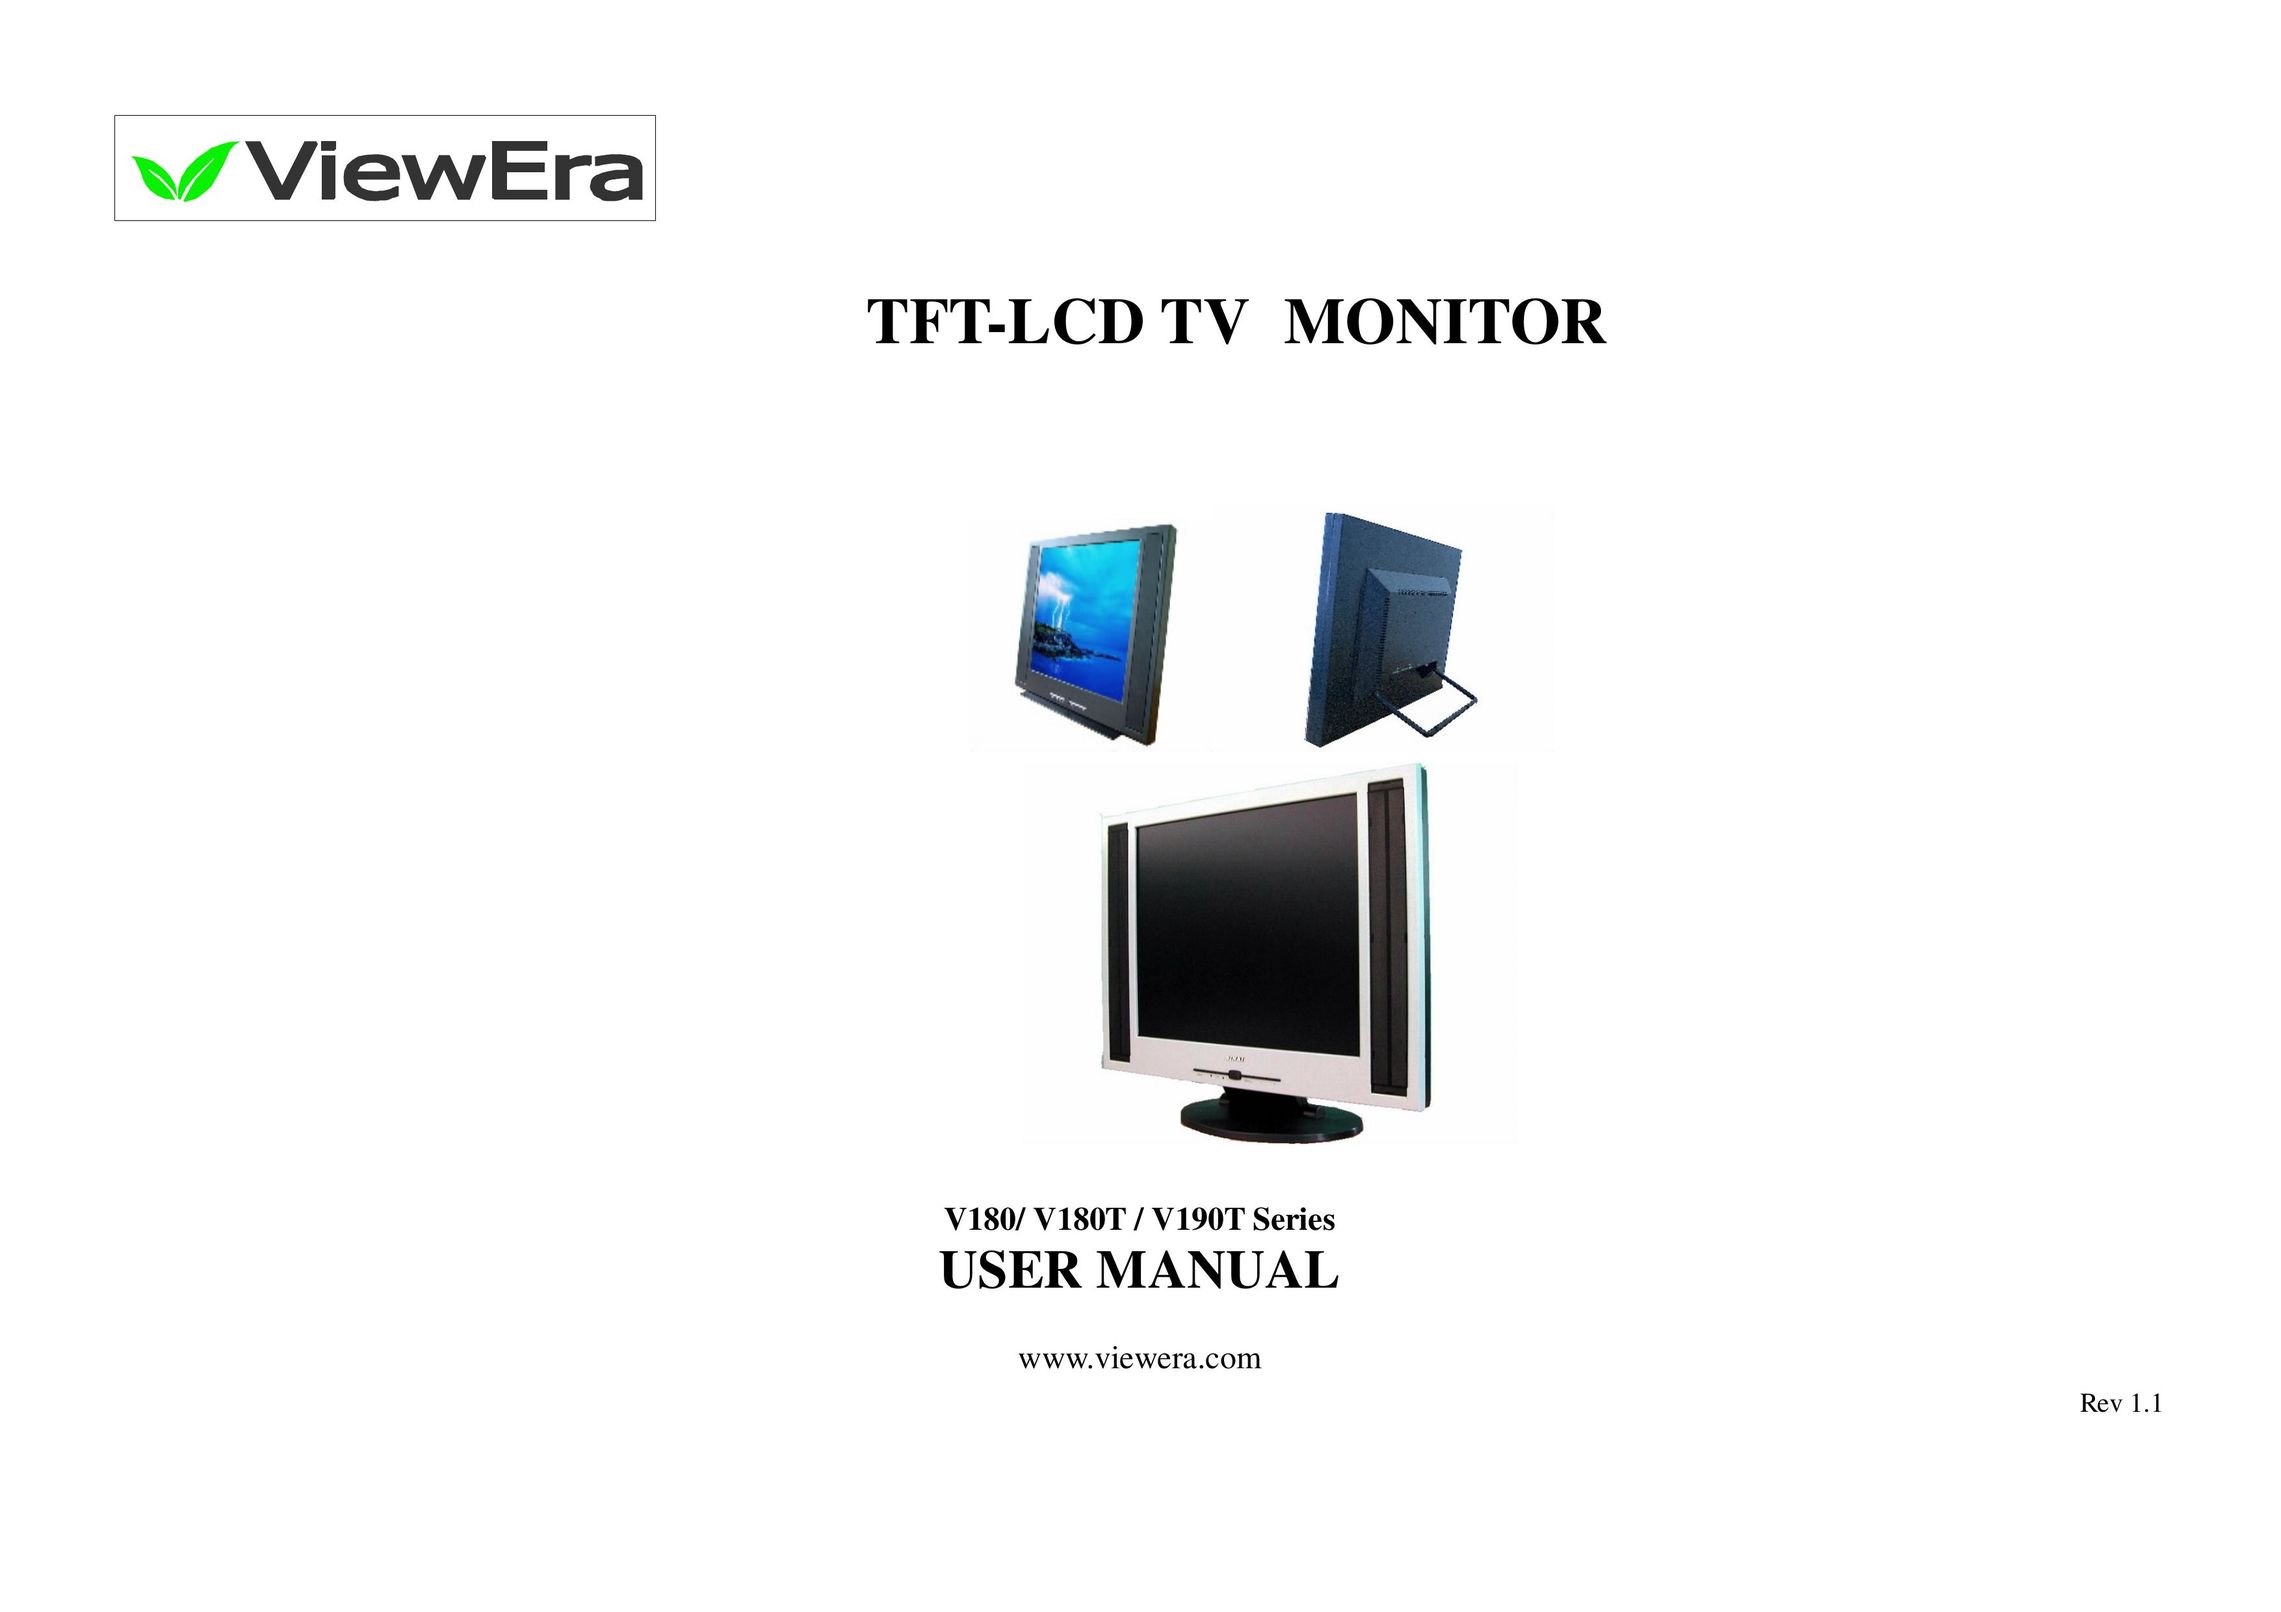 ViewEra V190T Series Flat Panel Television User Manual